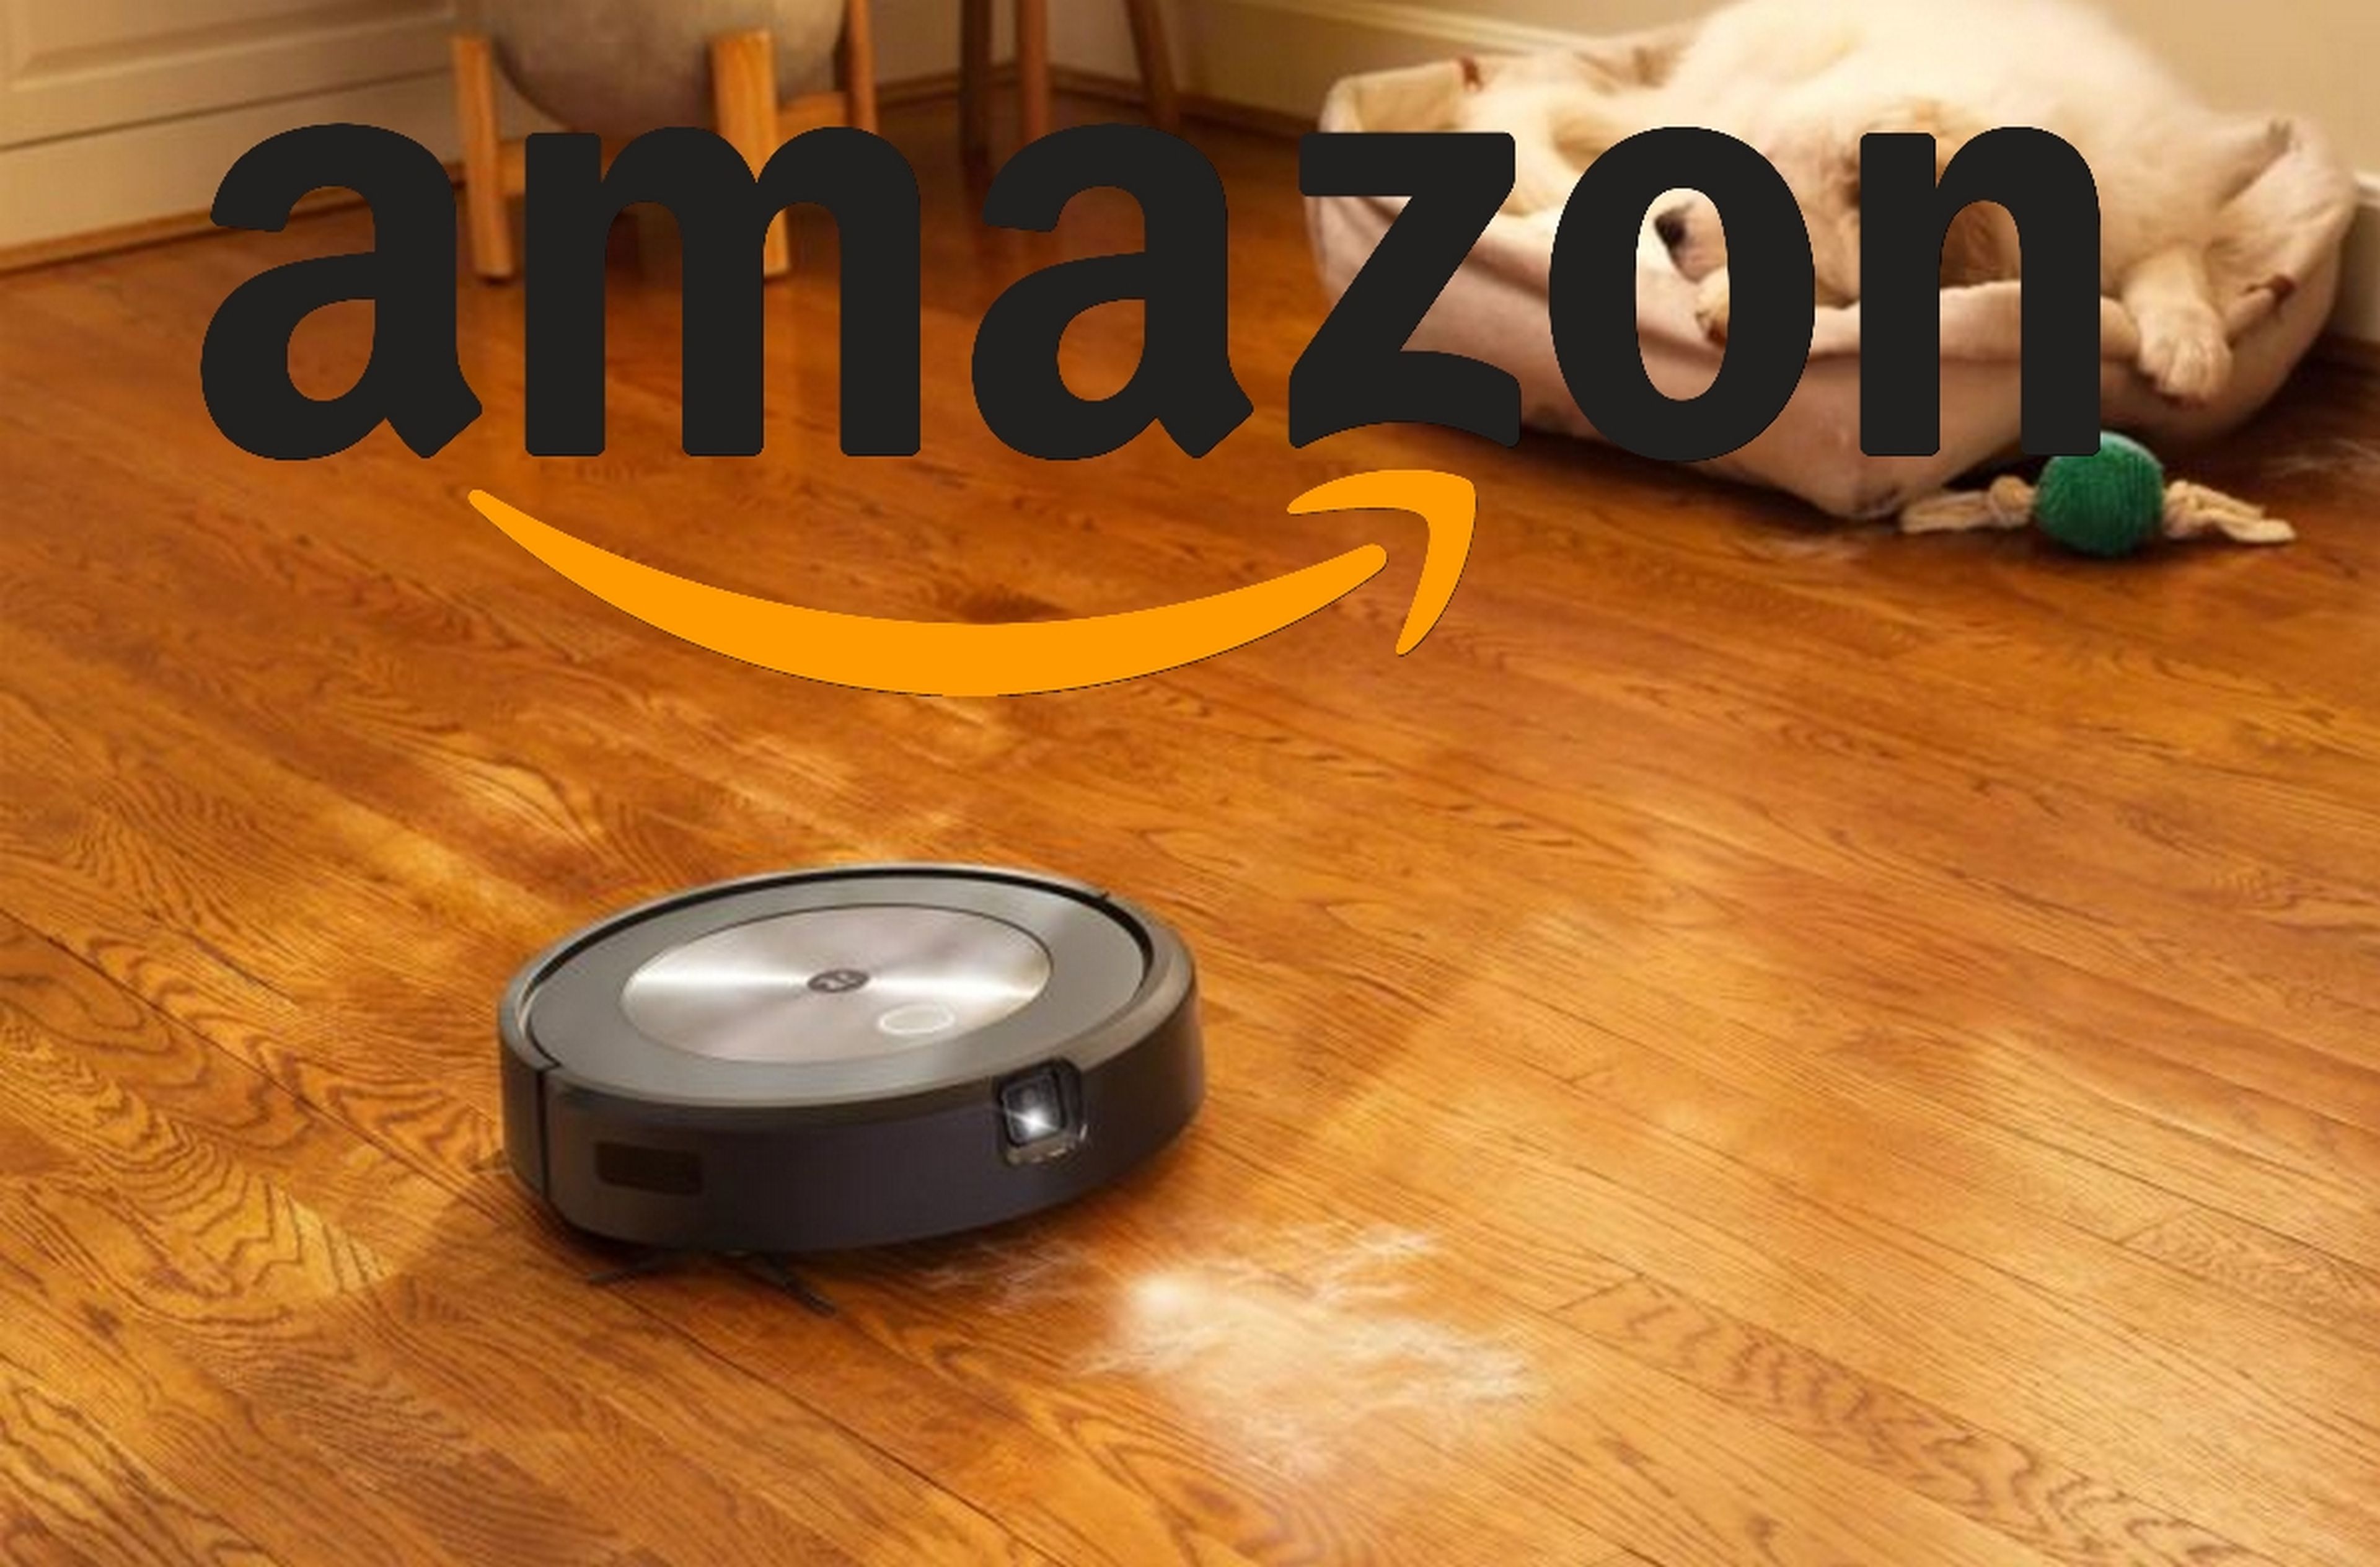 Amazon compra iRobot y se queda con los robots aspirador Roomba, por 1.700 millones de dólares